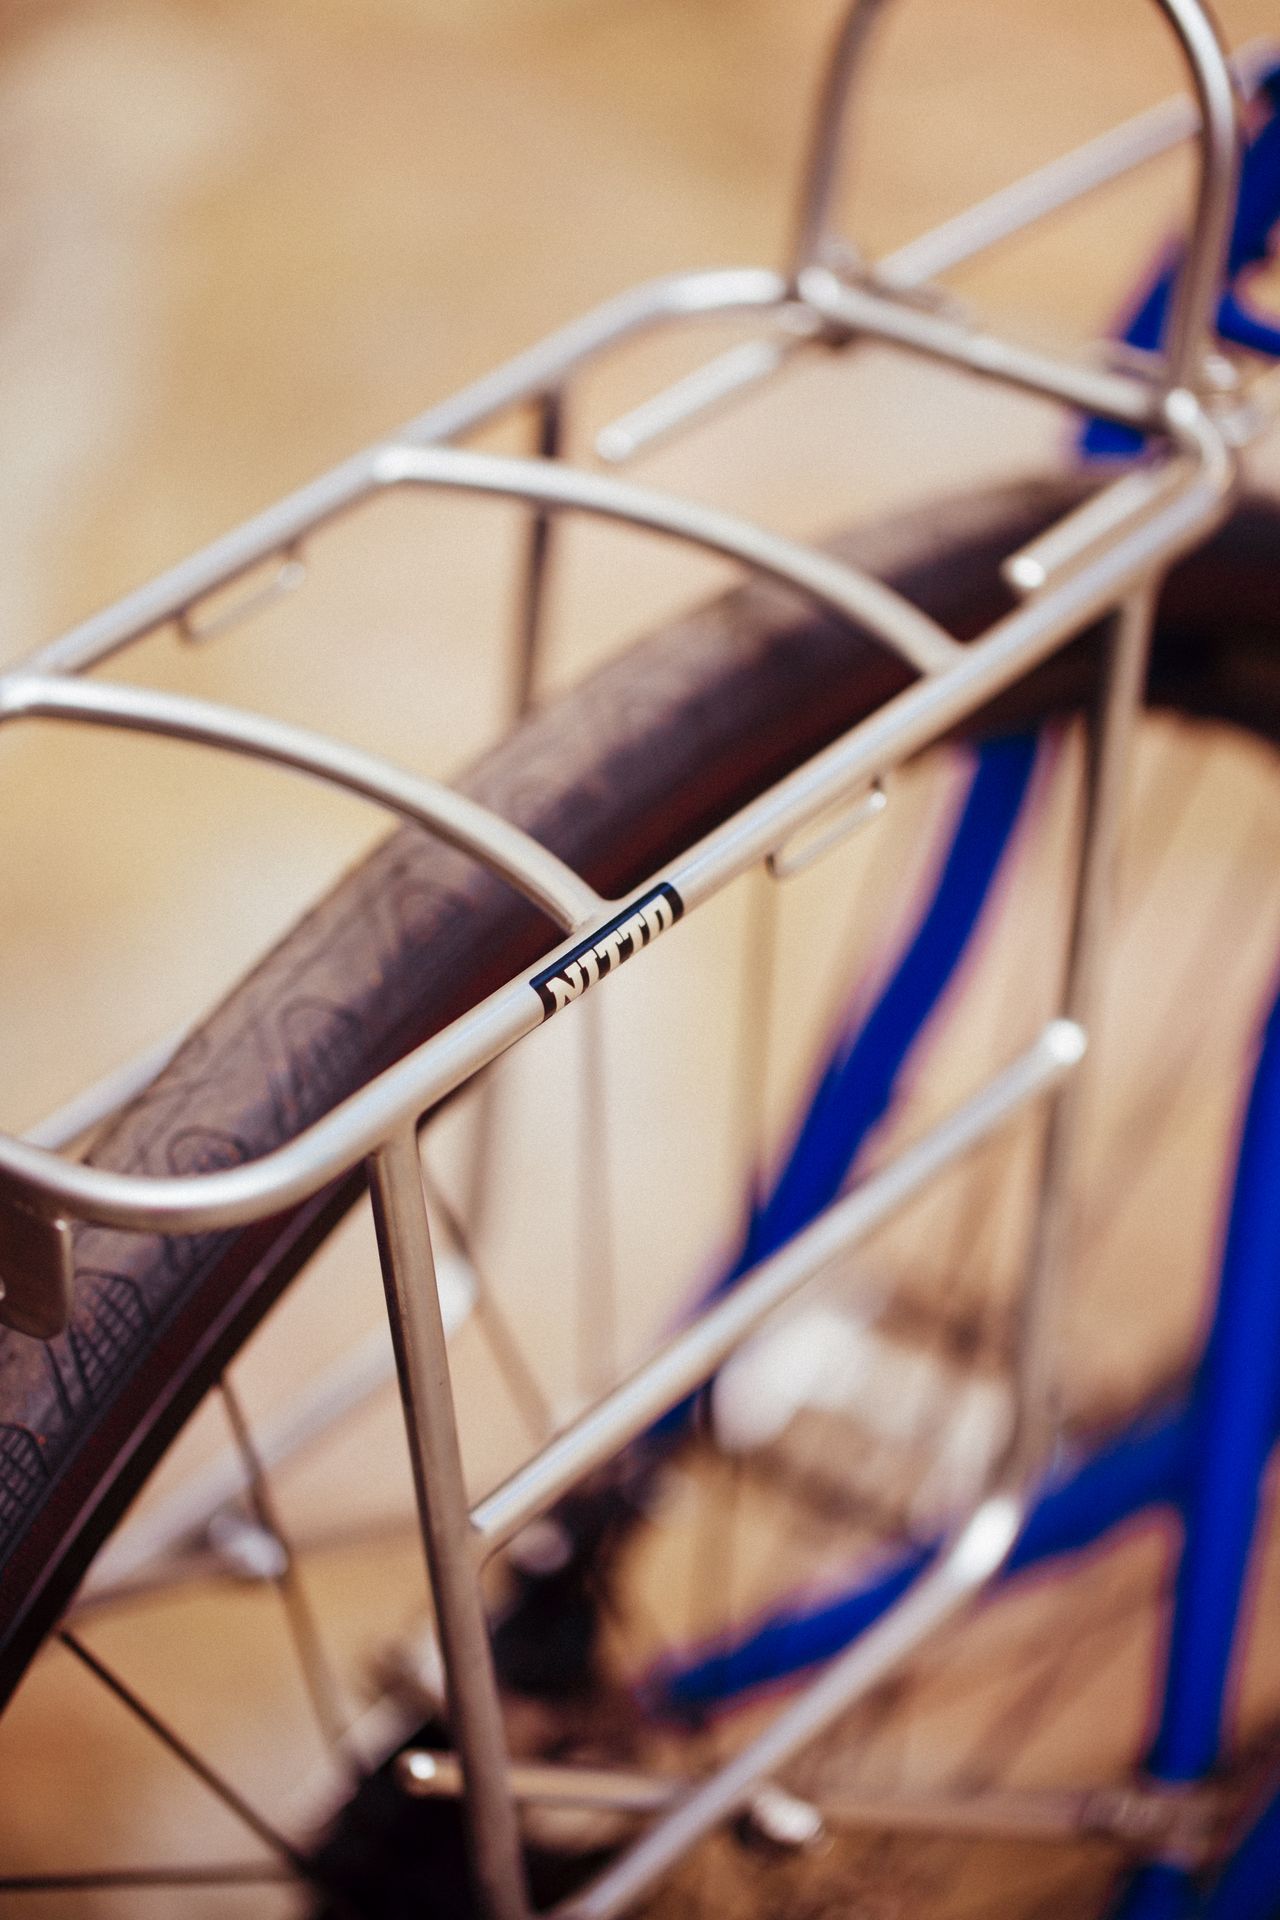 Magasin de cycles et atelier de réparation velo et montage vélo à la carte à Paris 13eme spécialisé dans le gravel et le voyage. montage de pieces nitto